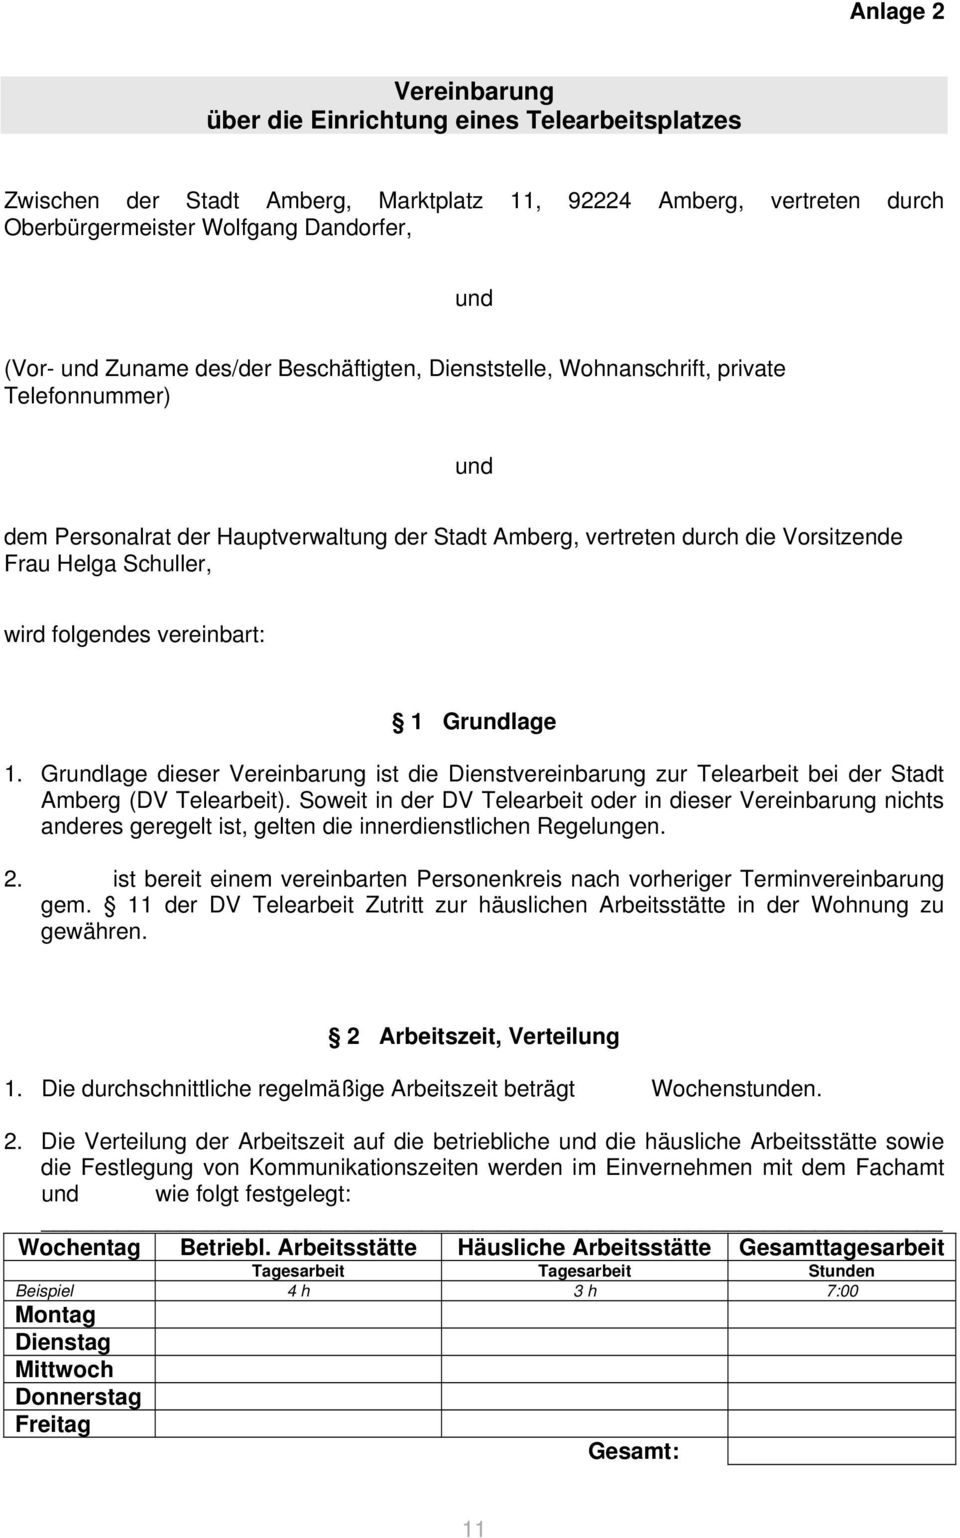 folgendes vereinbart: 1 Grundlage 1. Grundlage dieser Vereinbarung ist die Dienstvereinbarung zur Telearbeit bei der Stadt Amberg (DV Telearbeit).